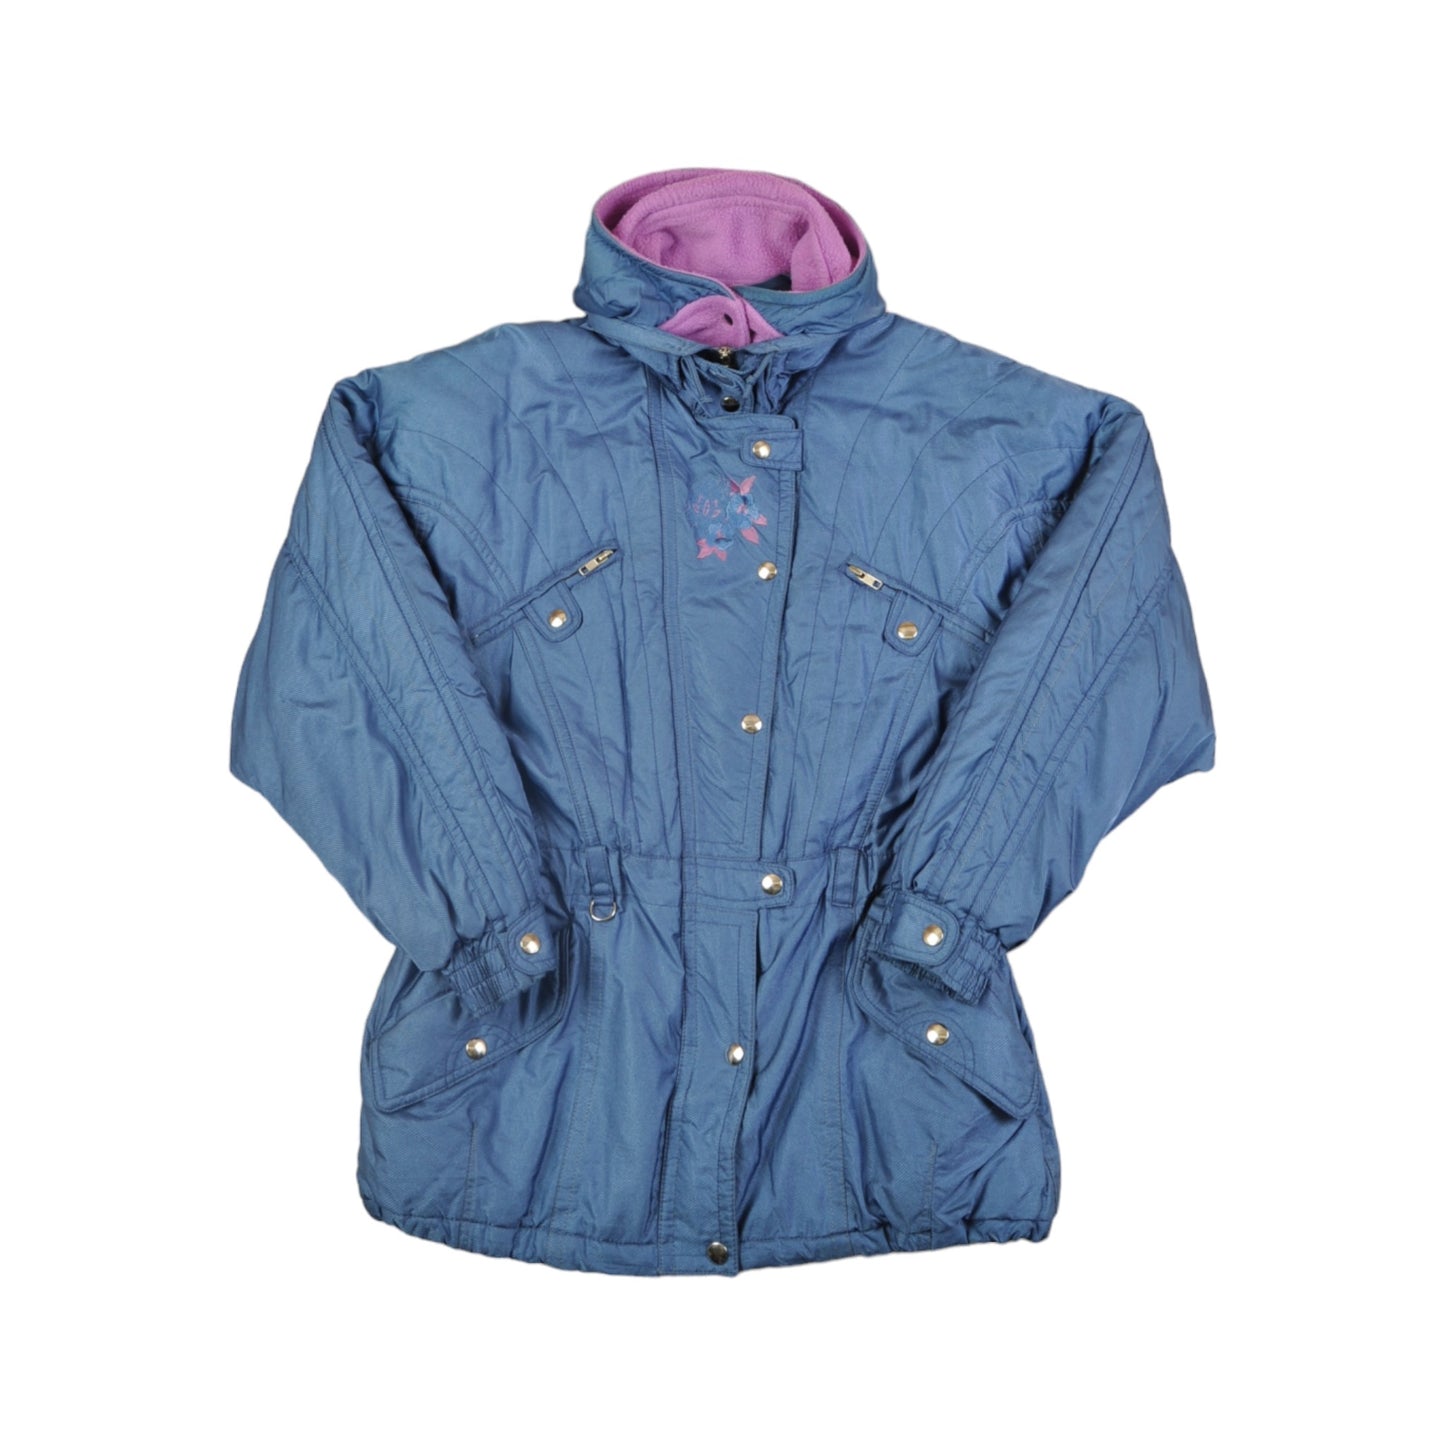 Vintage Sergio Tacchini Ski Jacket Blue Ladies Medium